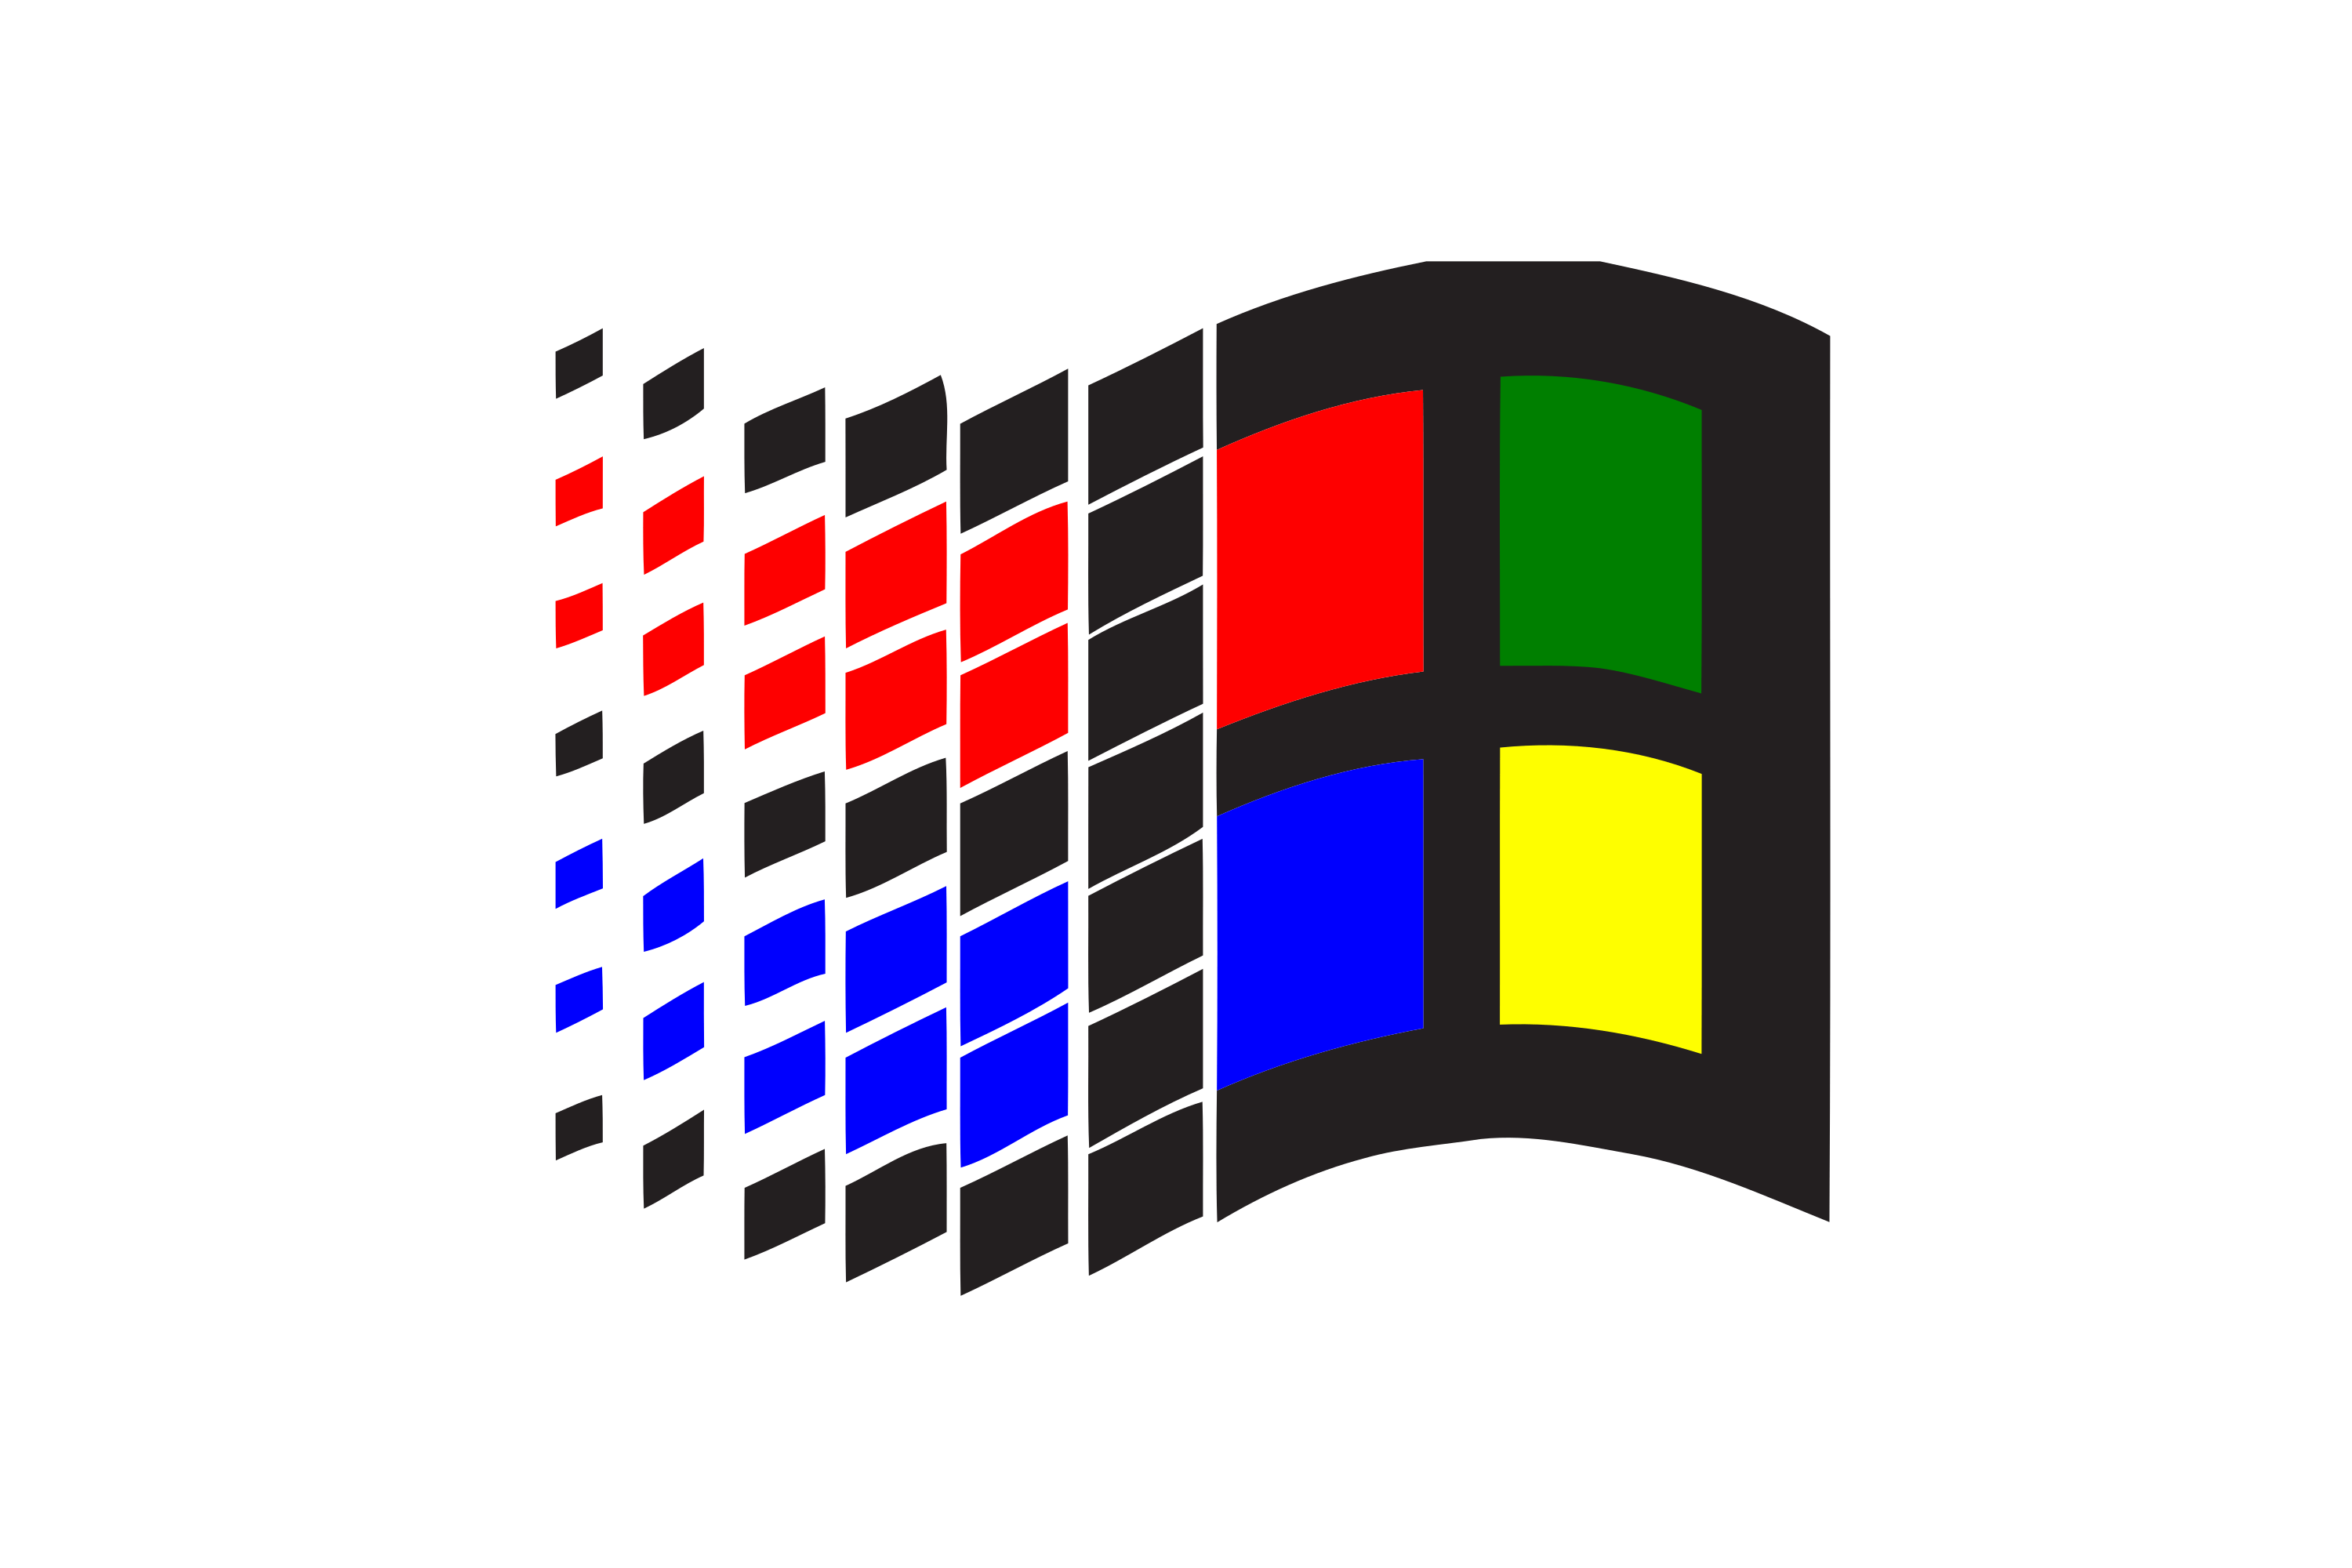 00 003. Виндовс NT 3.1. Windows NT 3.1 лого. ОС виндовс 3.0. Значок виндовс NT 3.1.